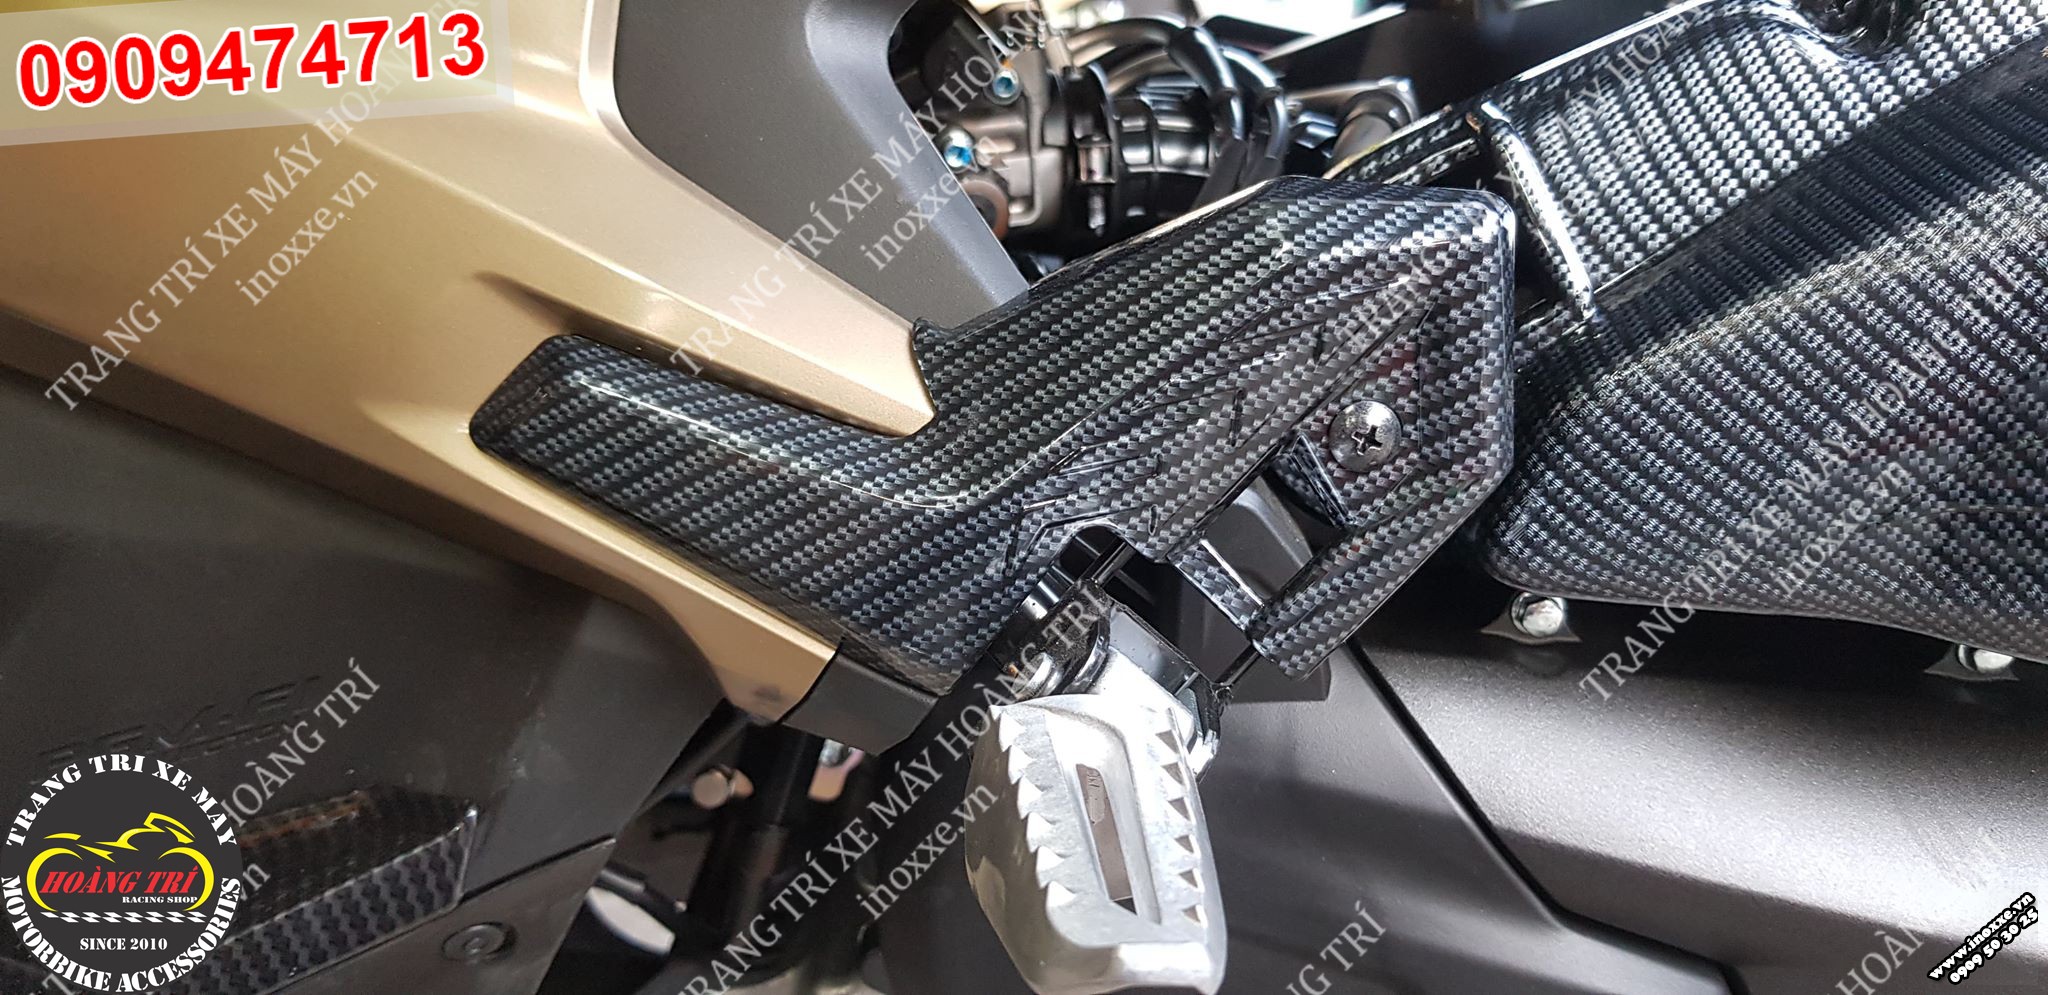 Phụ kiện trang trí xe Airblade 2020: Ốp gác chân sau sơn carbon